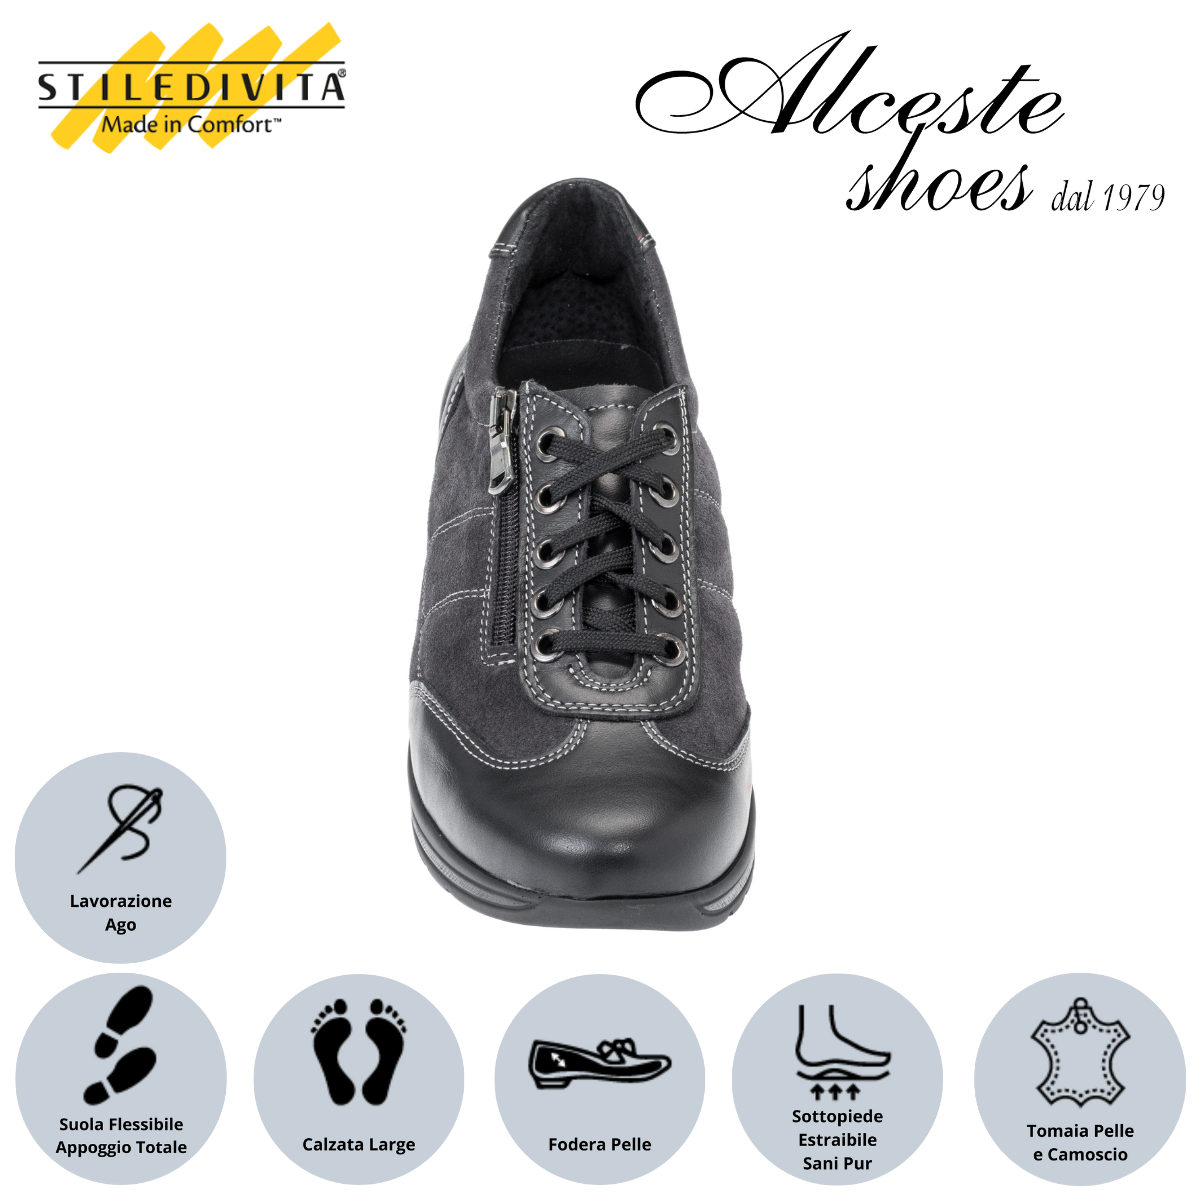 Sneakers Donna con Lacci e Cerniera "Stiledivita" Art. 9042 in Pelle Nero e Camoscio Antracite Alceste Shoes 24